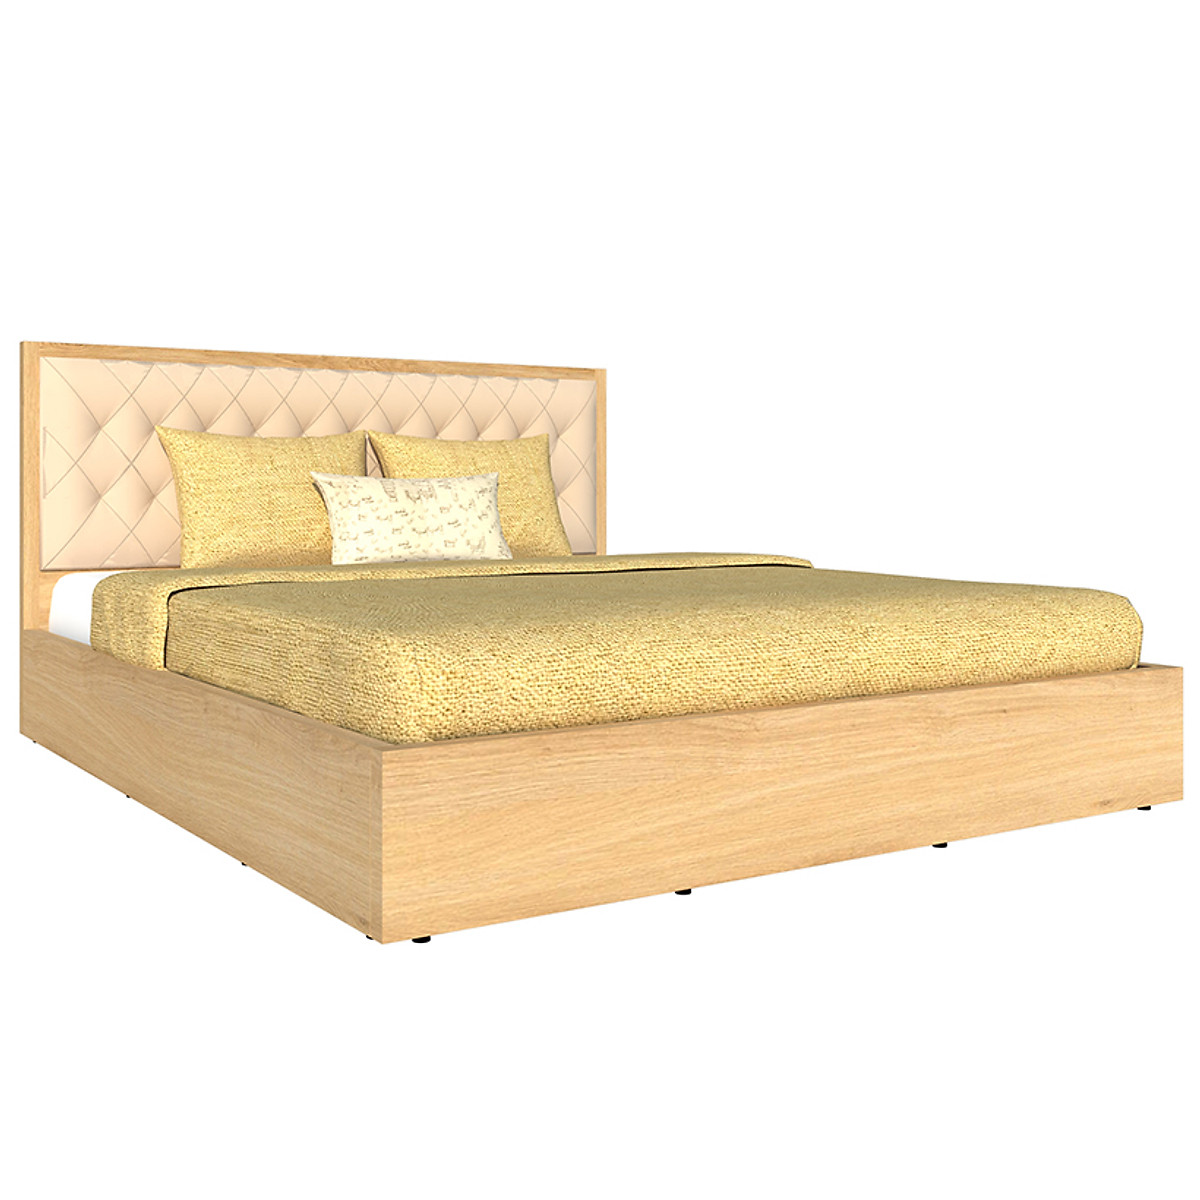 Giường ngủ cao cấp Tundo màu vàng sồi 180cm x 200cm